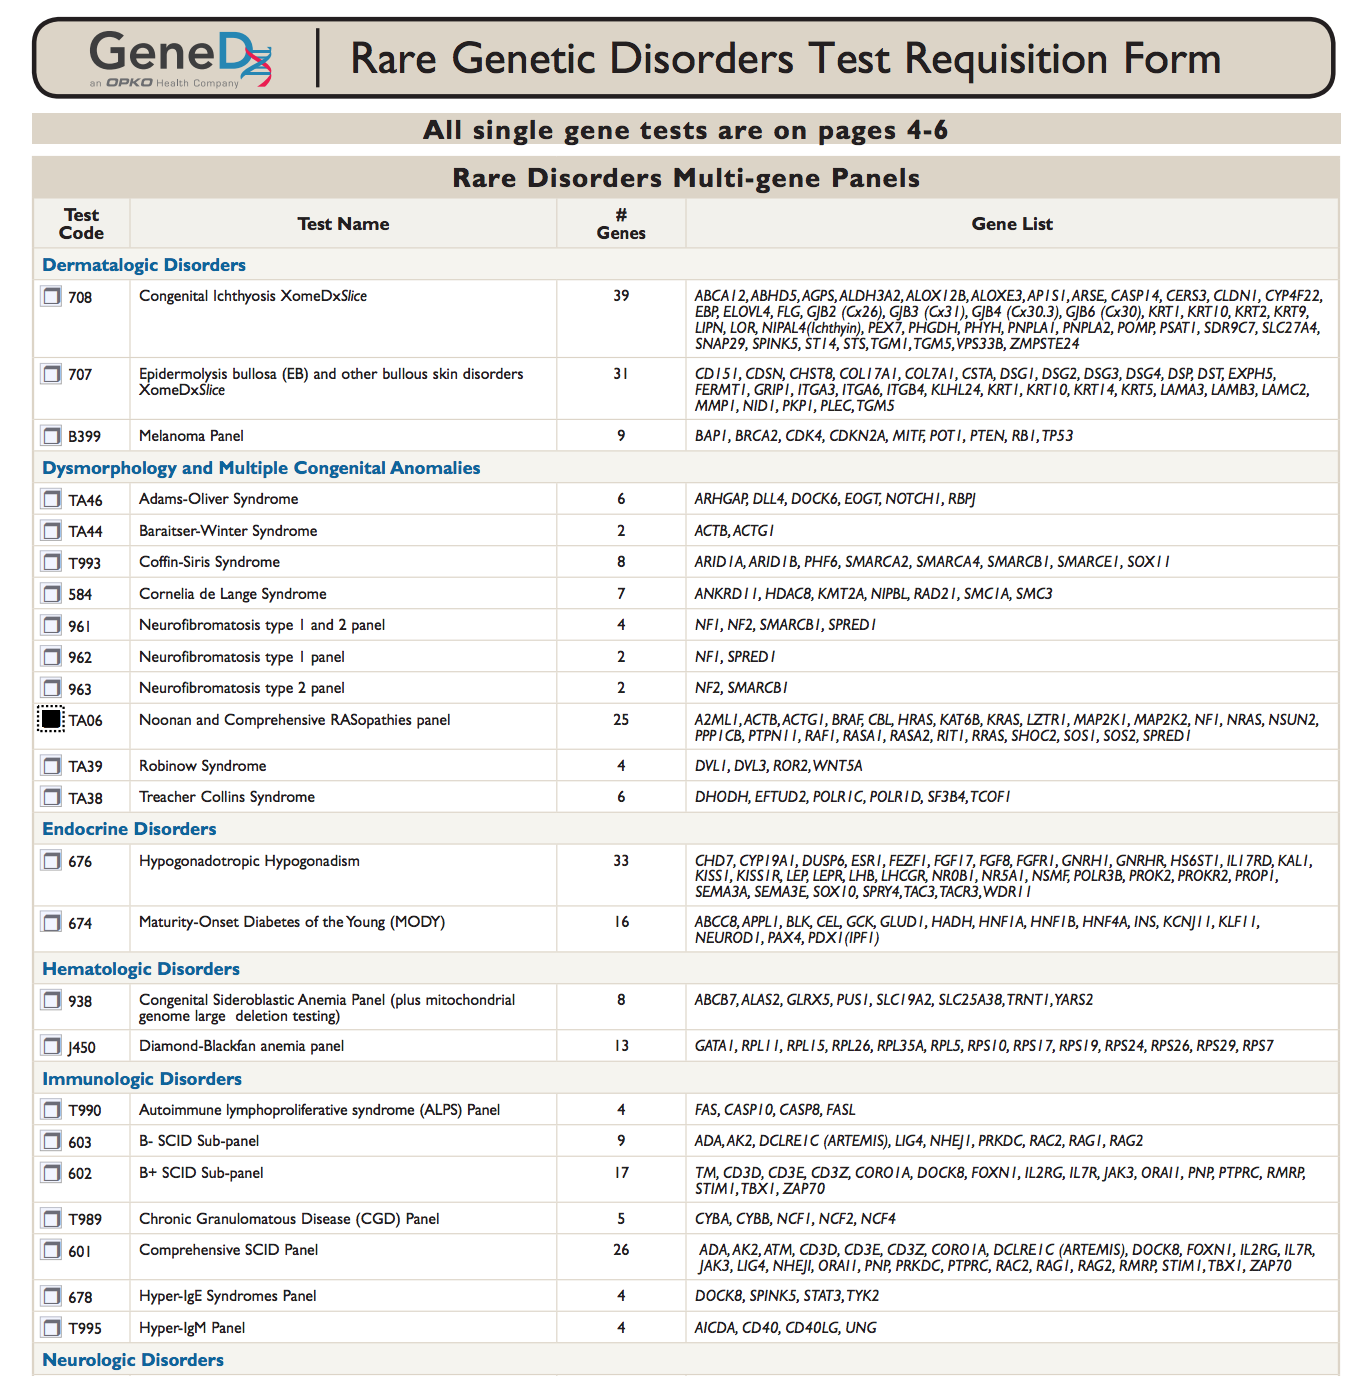 جدول مع قوائم بالاختبارات ورموزها وأسمائها وعدد الجينات التي تم العثور على الحالة التي تم اختبارها من أجلها وقائمة تلك الجينات